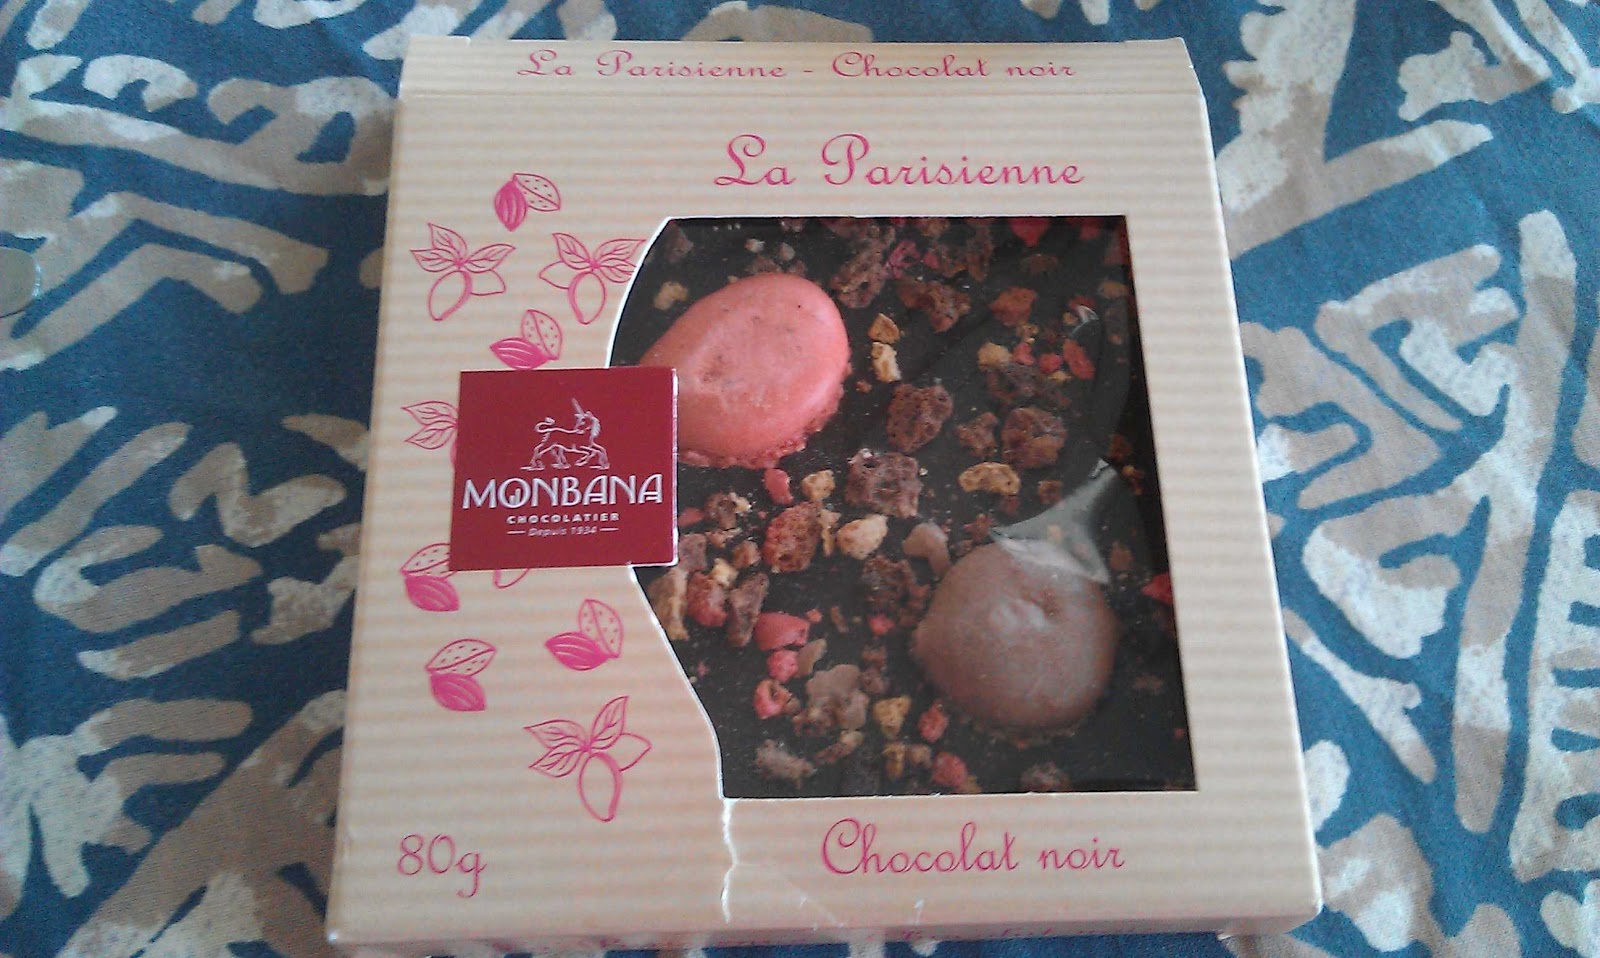 MONBANA, Chocolatier depuis 1934